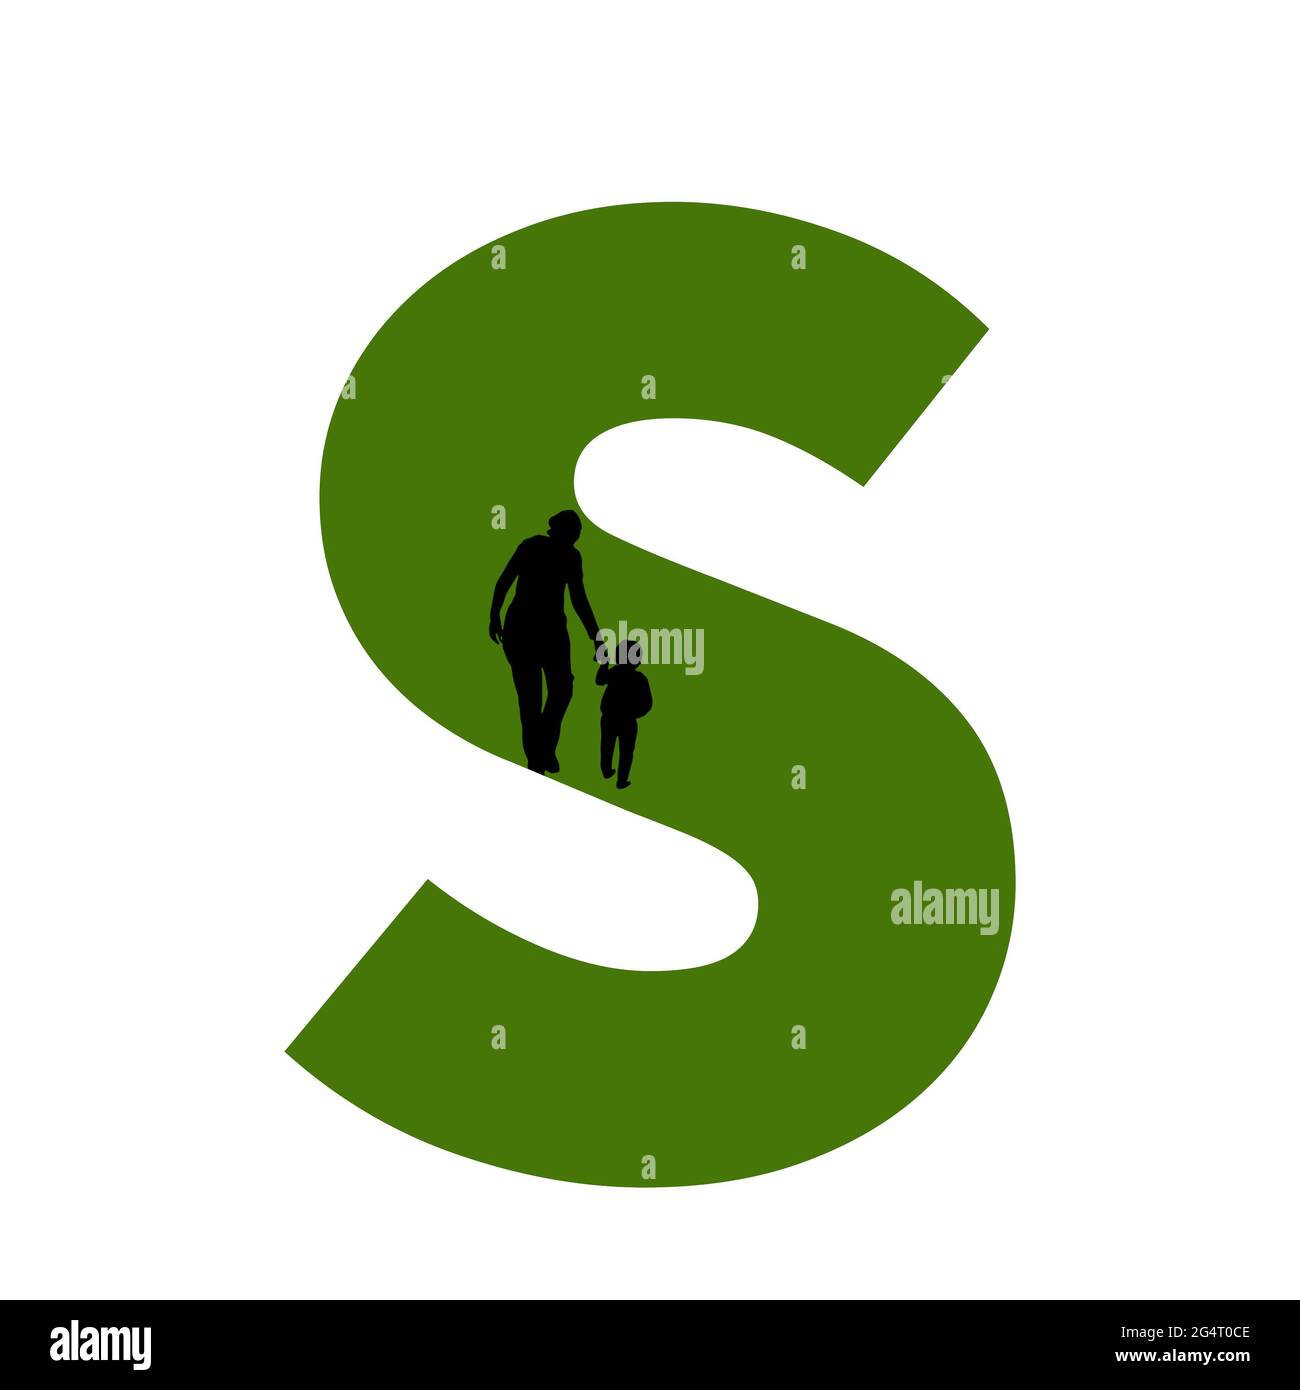 Lettre S de l'alphabet avec silhouette d'une mère et d'un enfant marchant, en vert et noir Banque D'Images